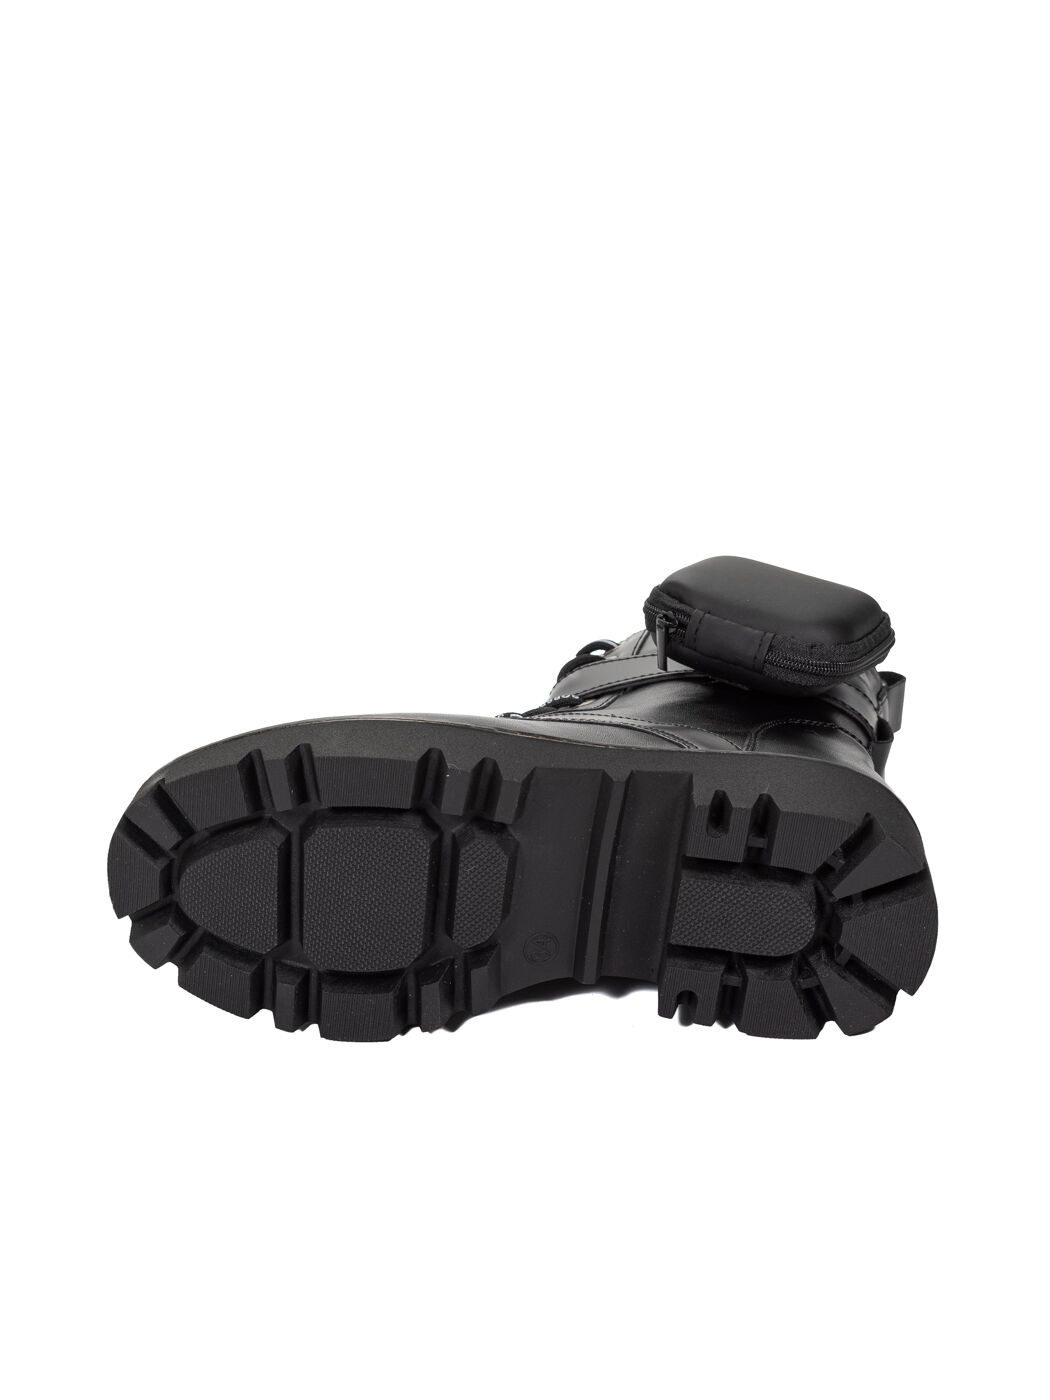 Ботинки  детские черные экокожа платформа зима 1M вид 2